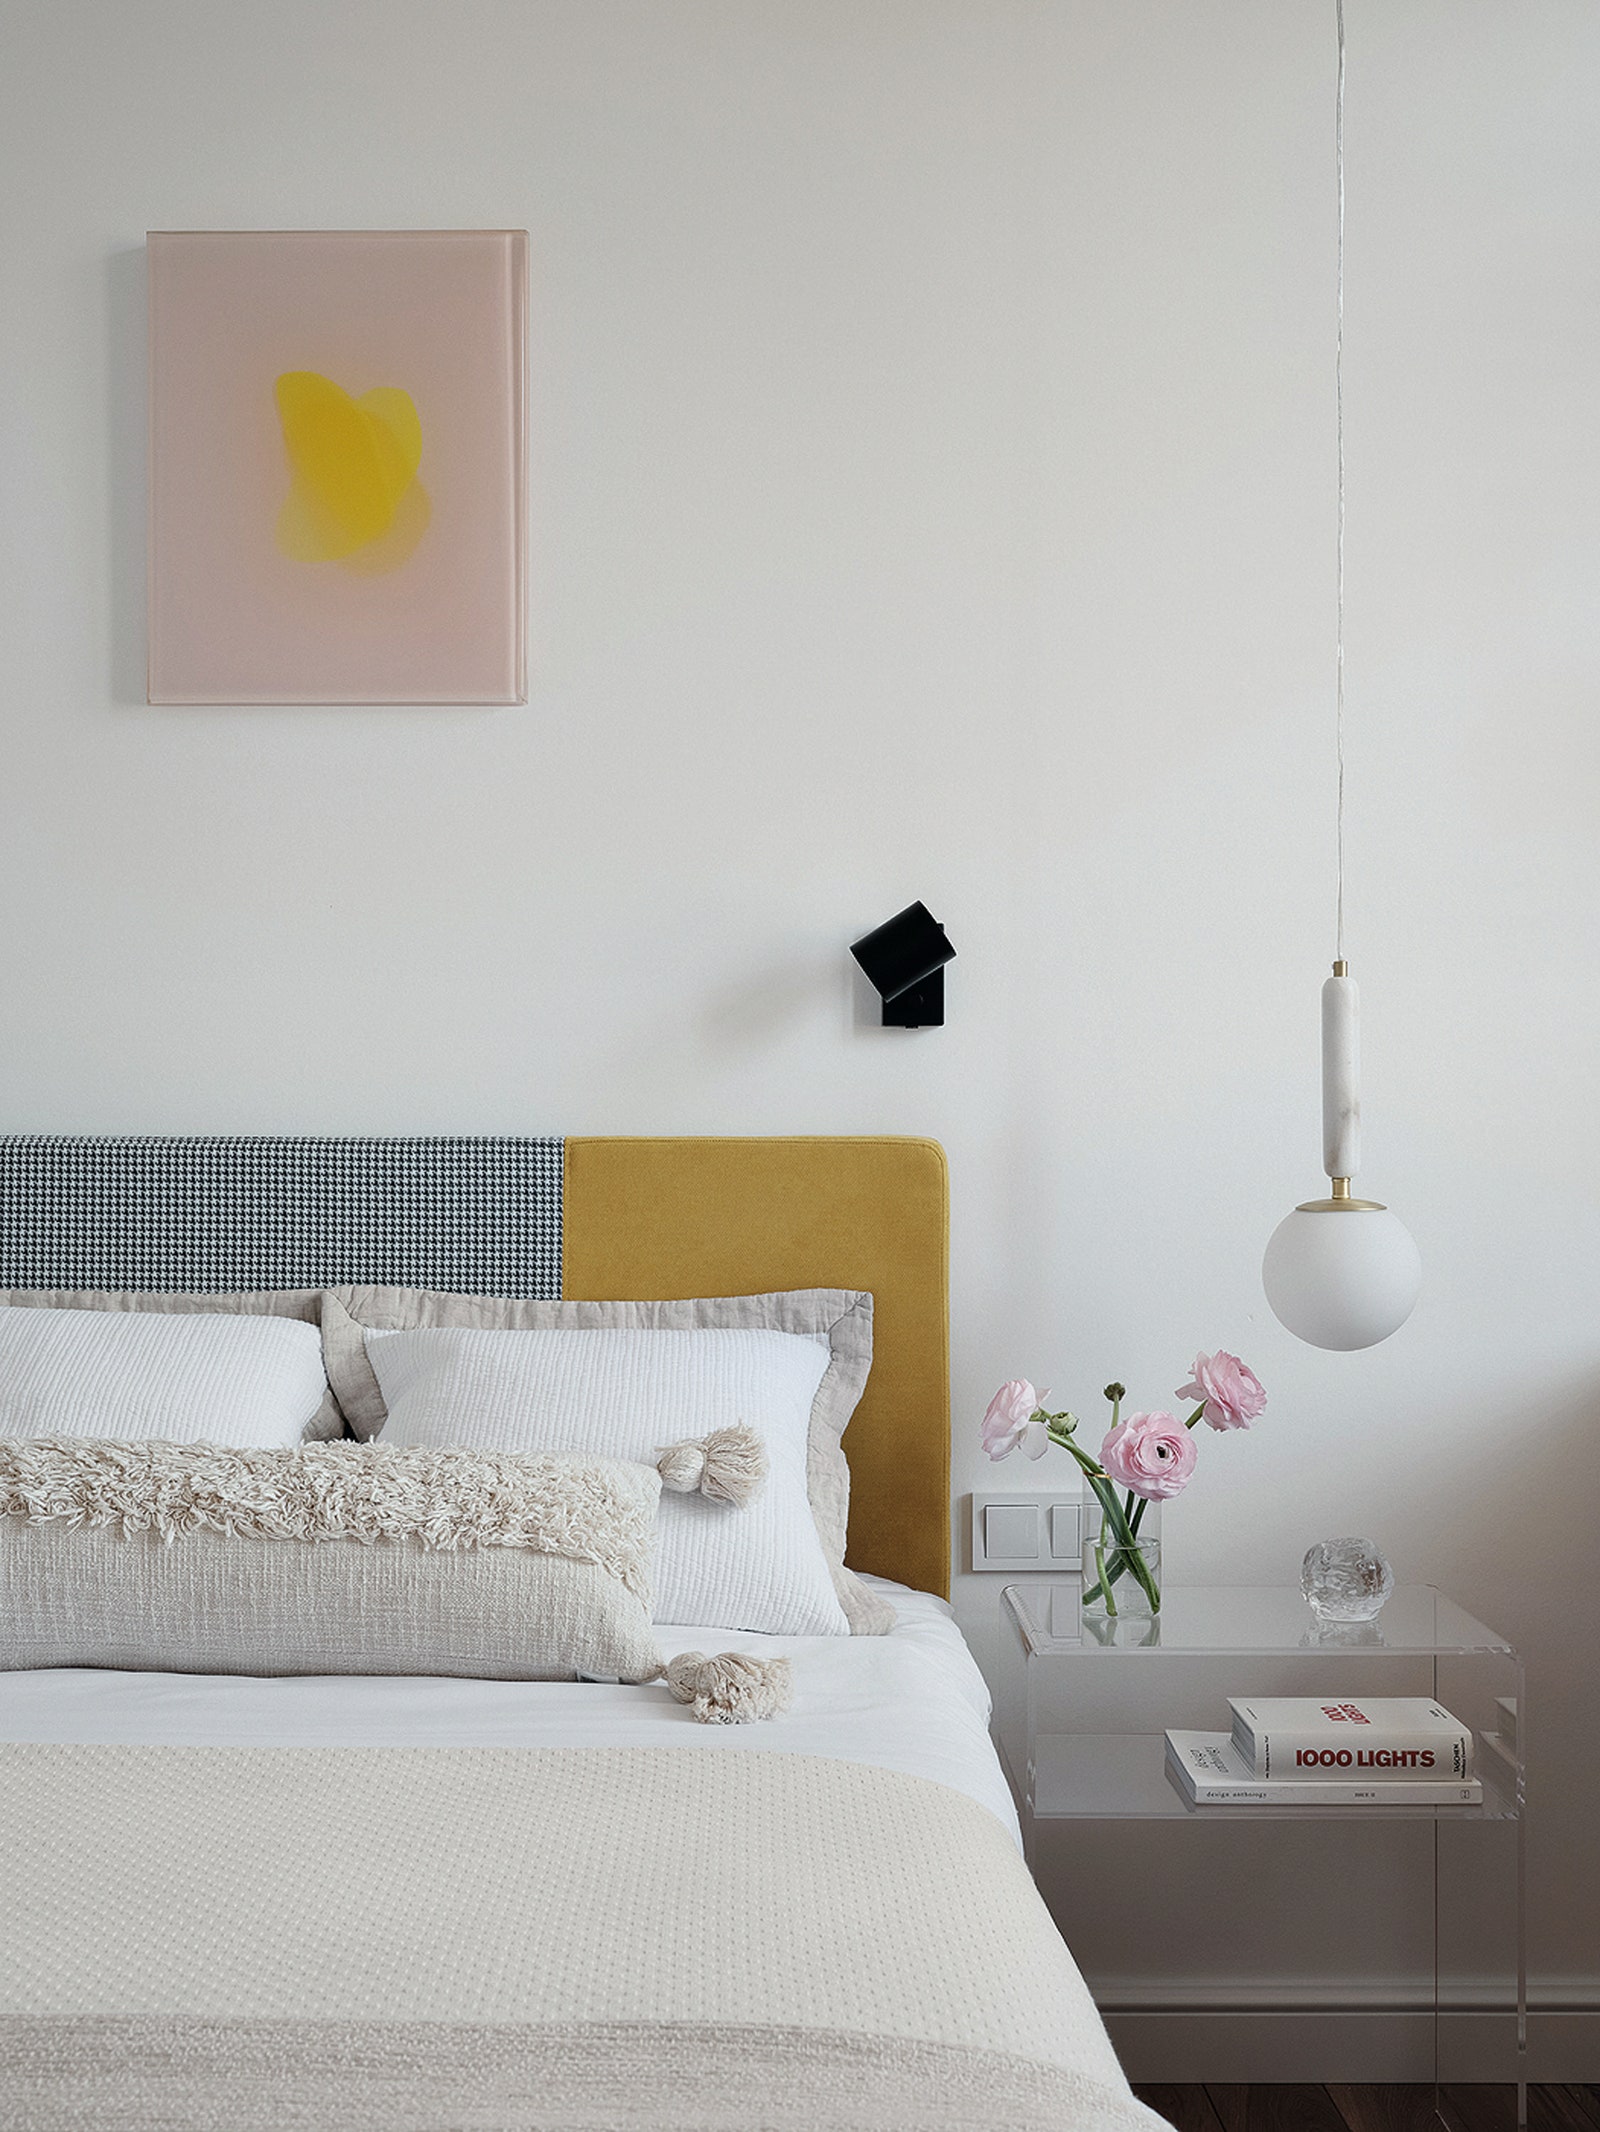 На стене в детской работа “Манго” Алисы Спотс бра Ikea прикроватный столик Zara Home подвесной светильник Globen Lighting.